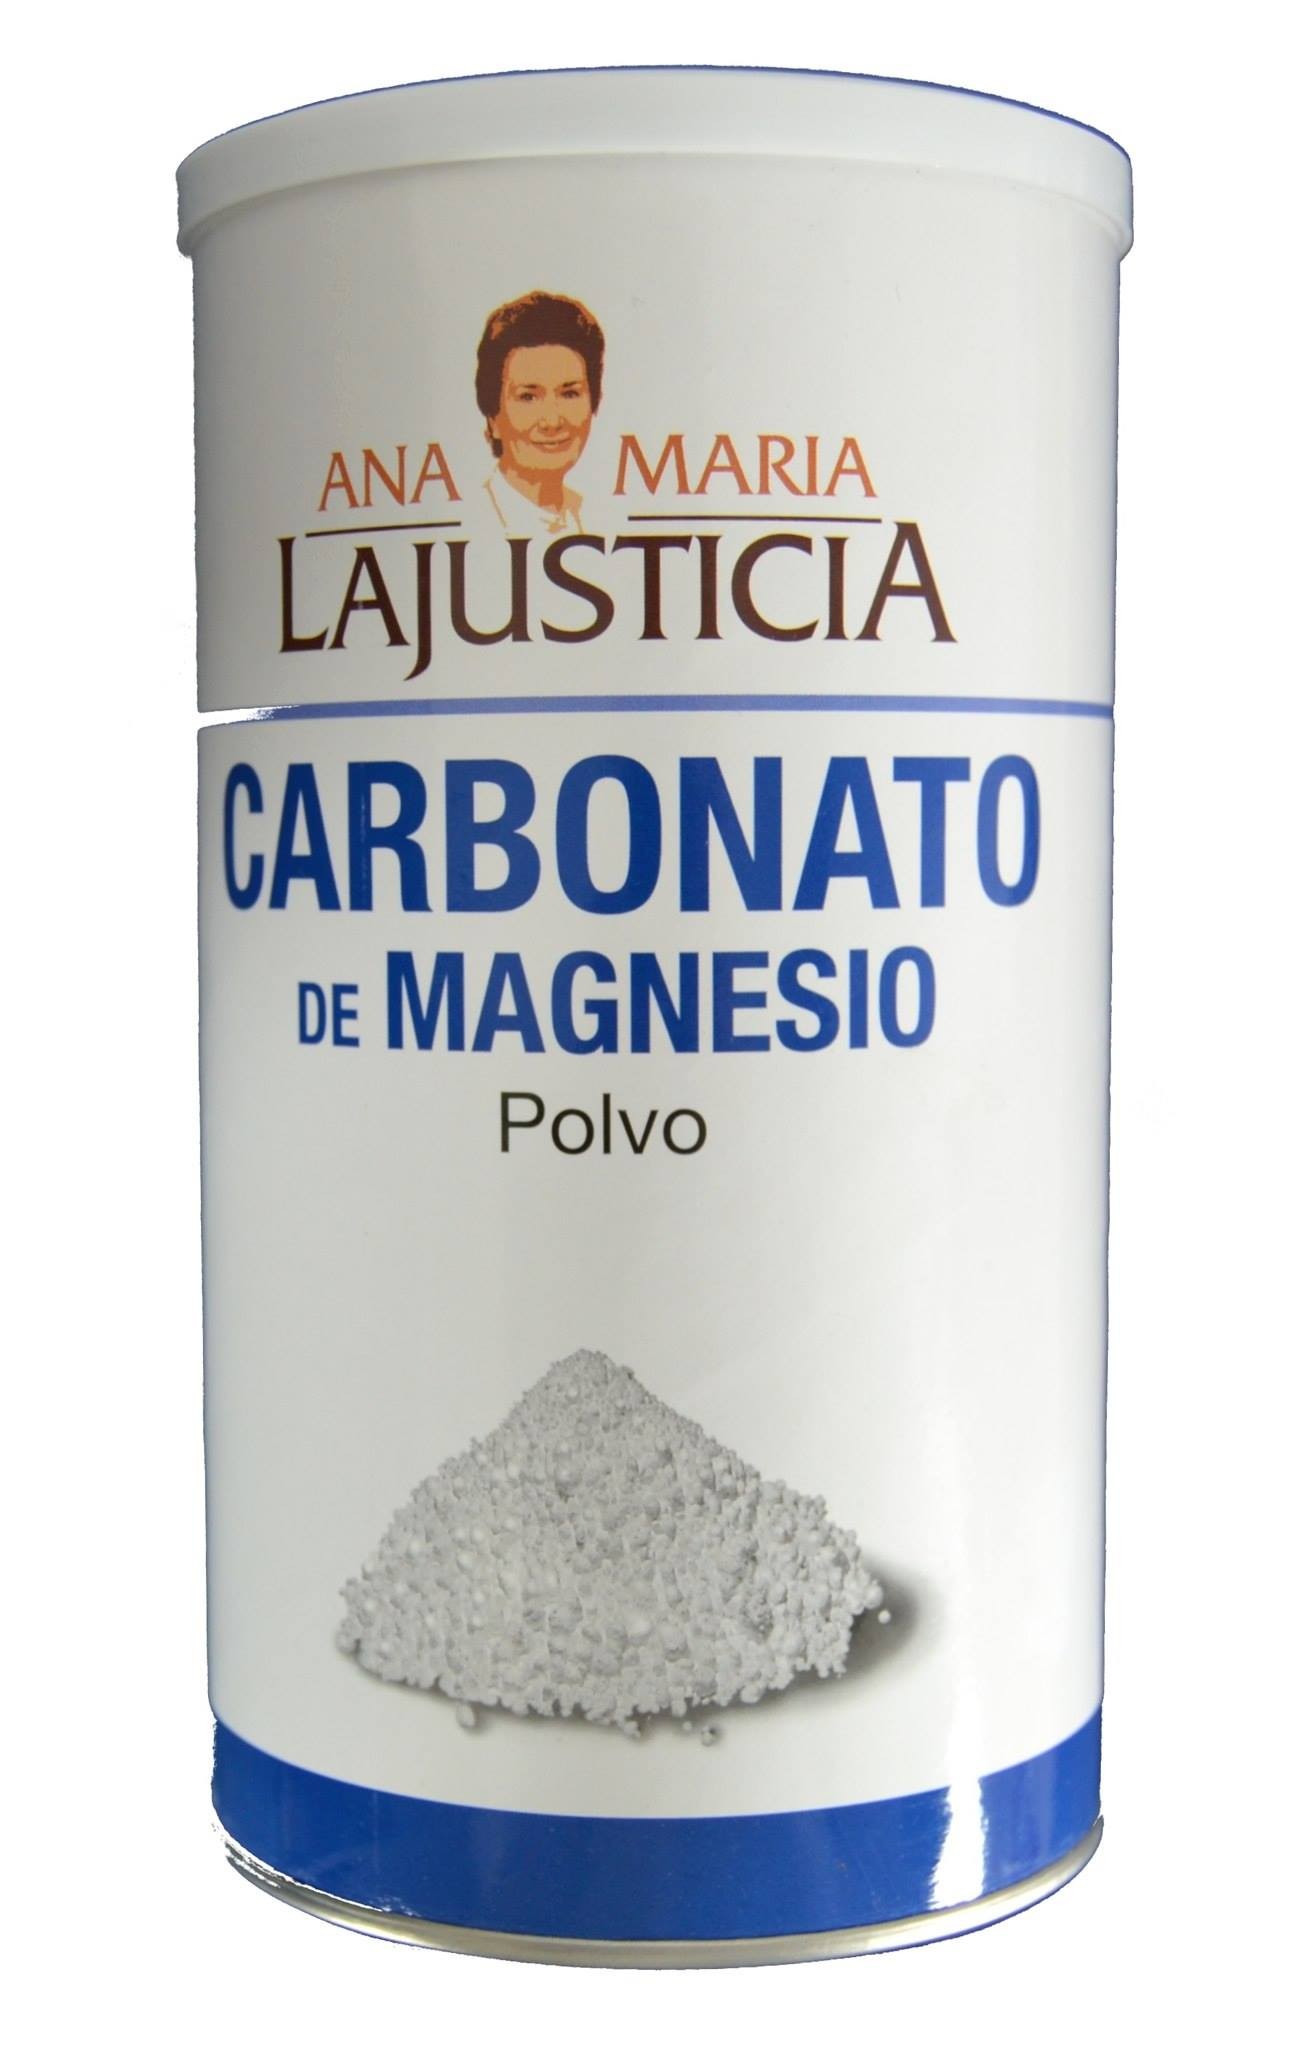 Polvo de carbonato de magnesio - Peso: 2.2 lbs, Tipo: Estándar - por Inoxia